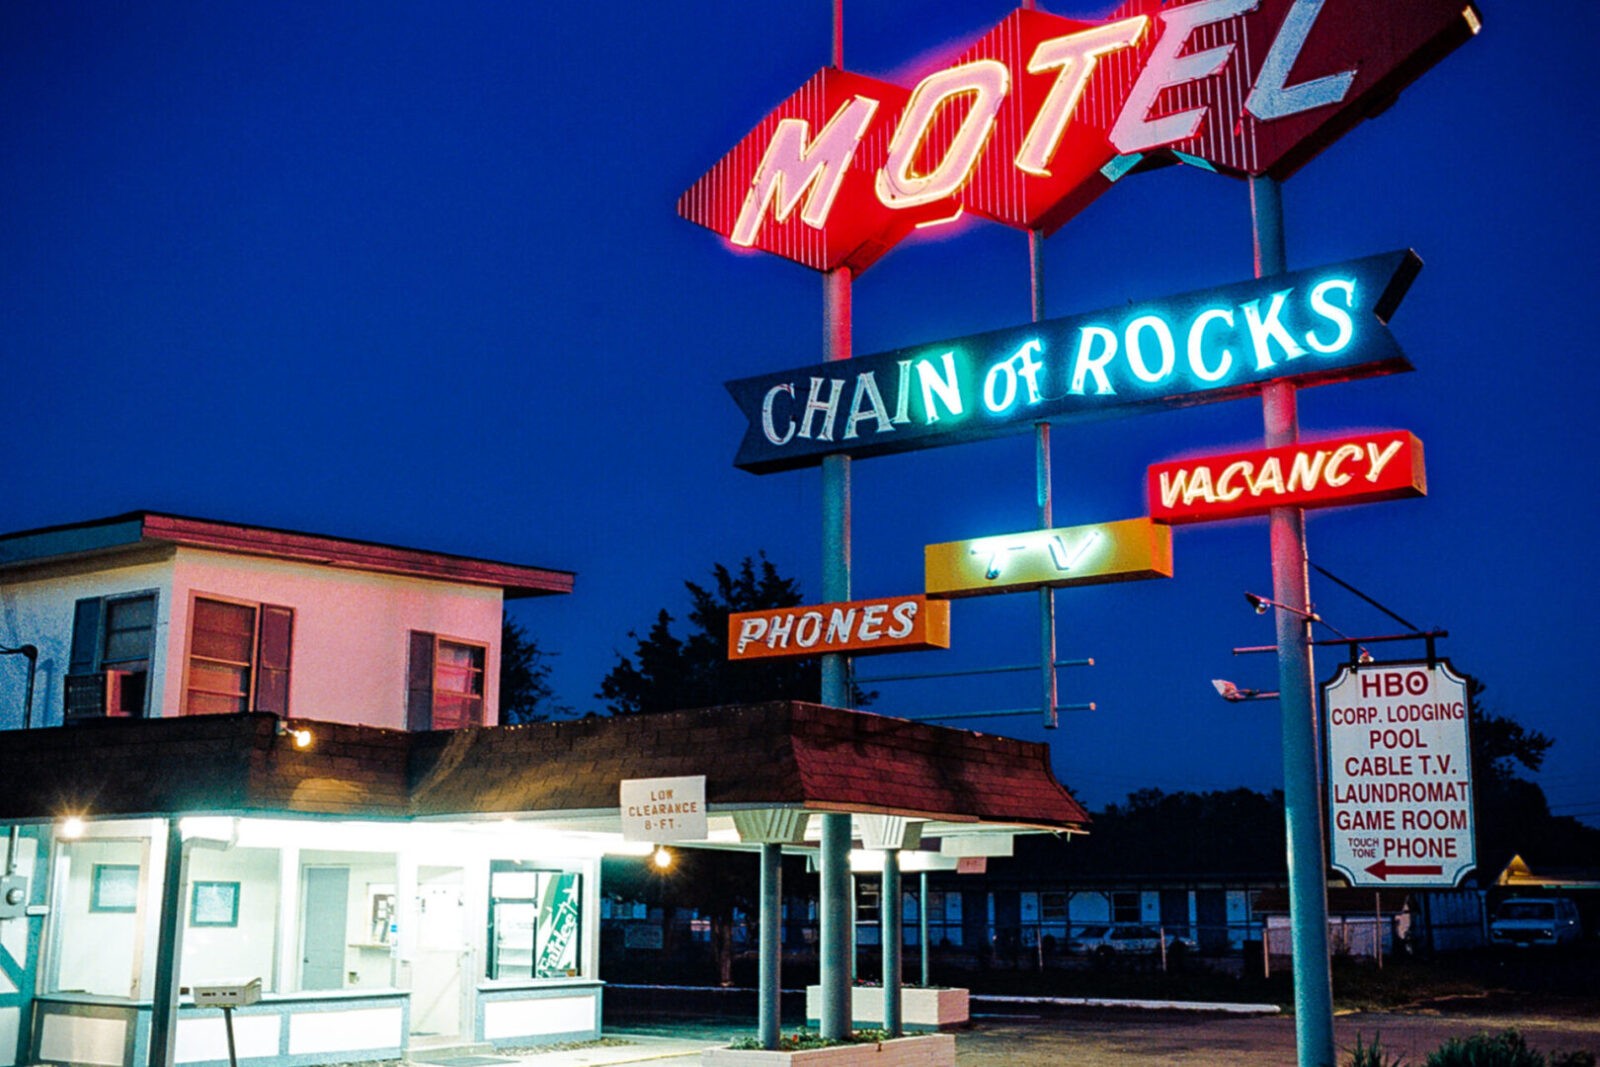 Historic Route 66 Granite City IL Illinois Chain of Rocks Motel Neon Sign